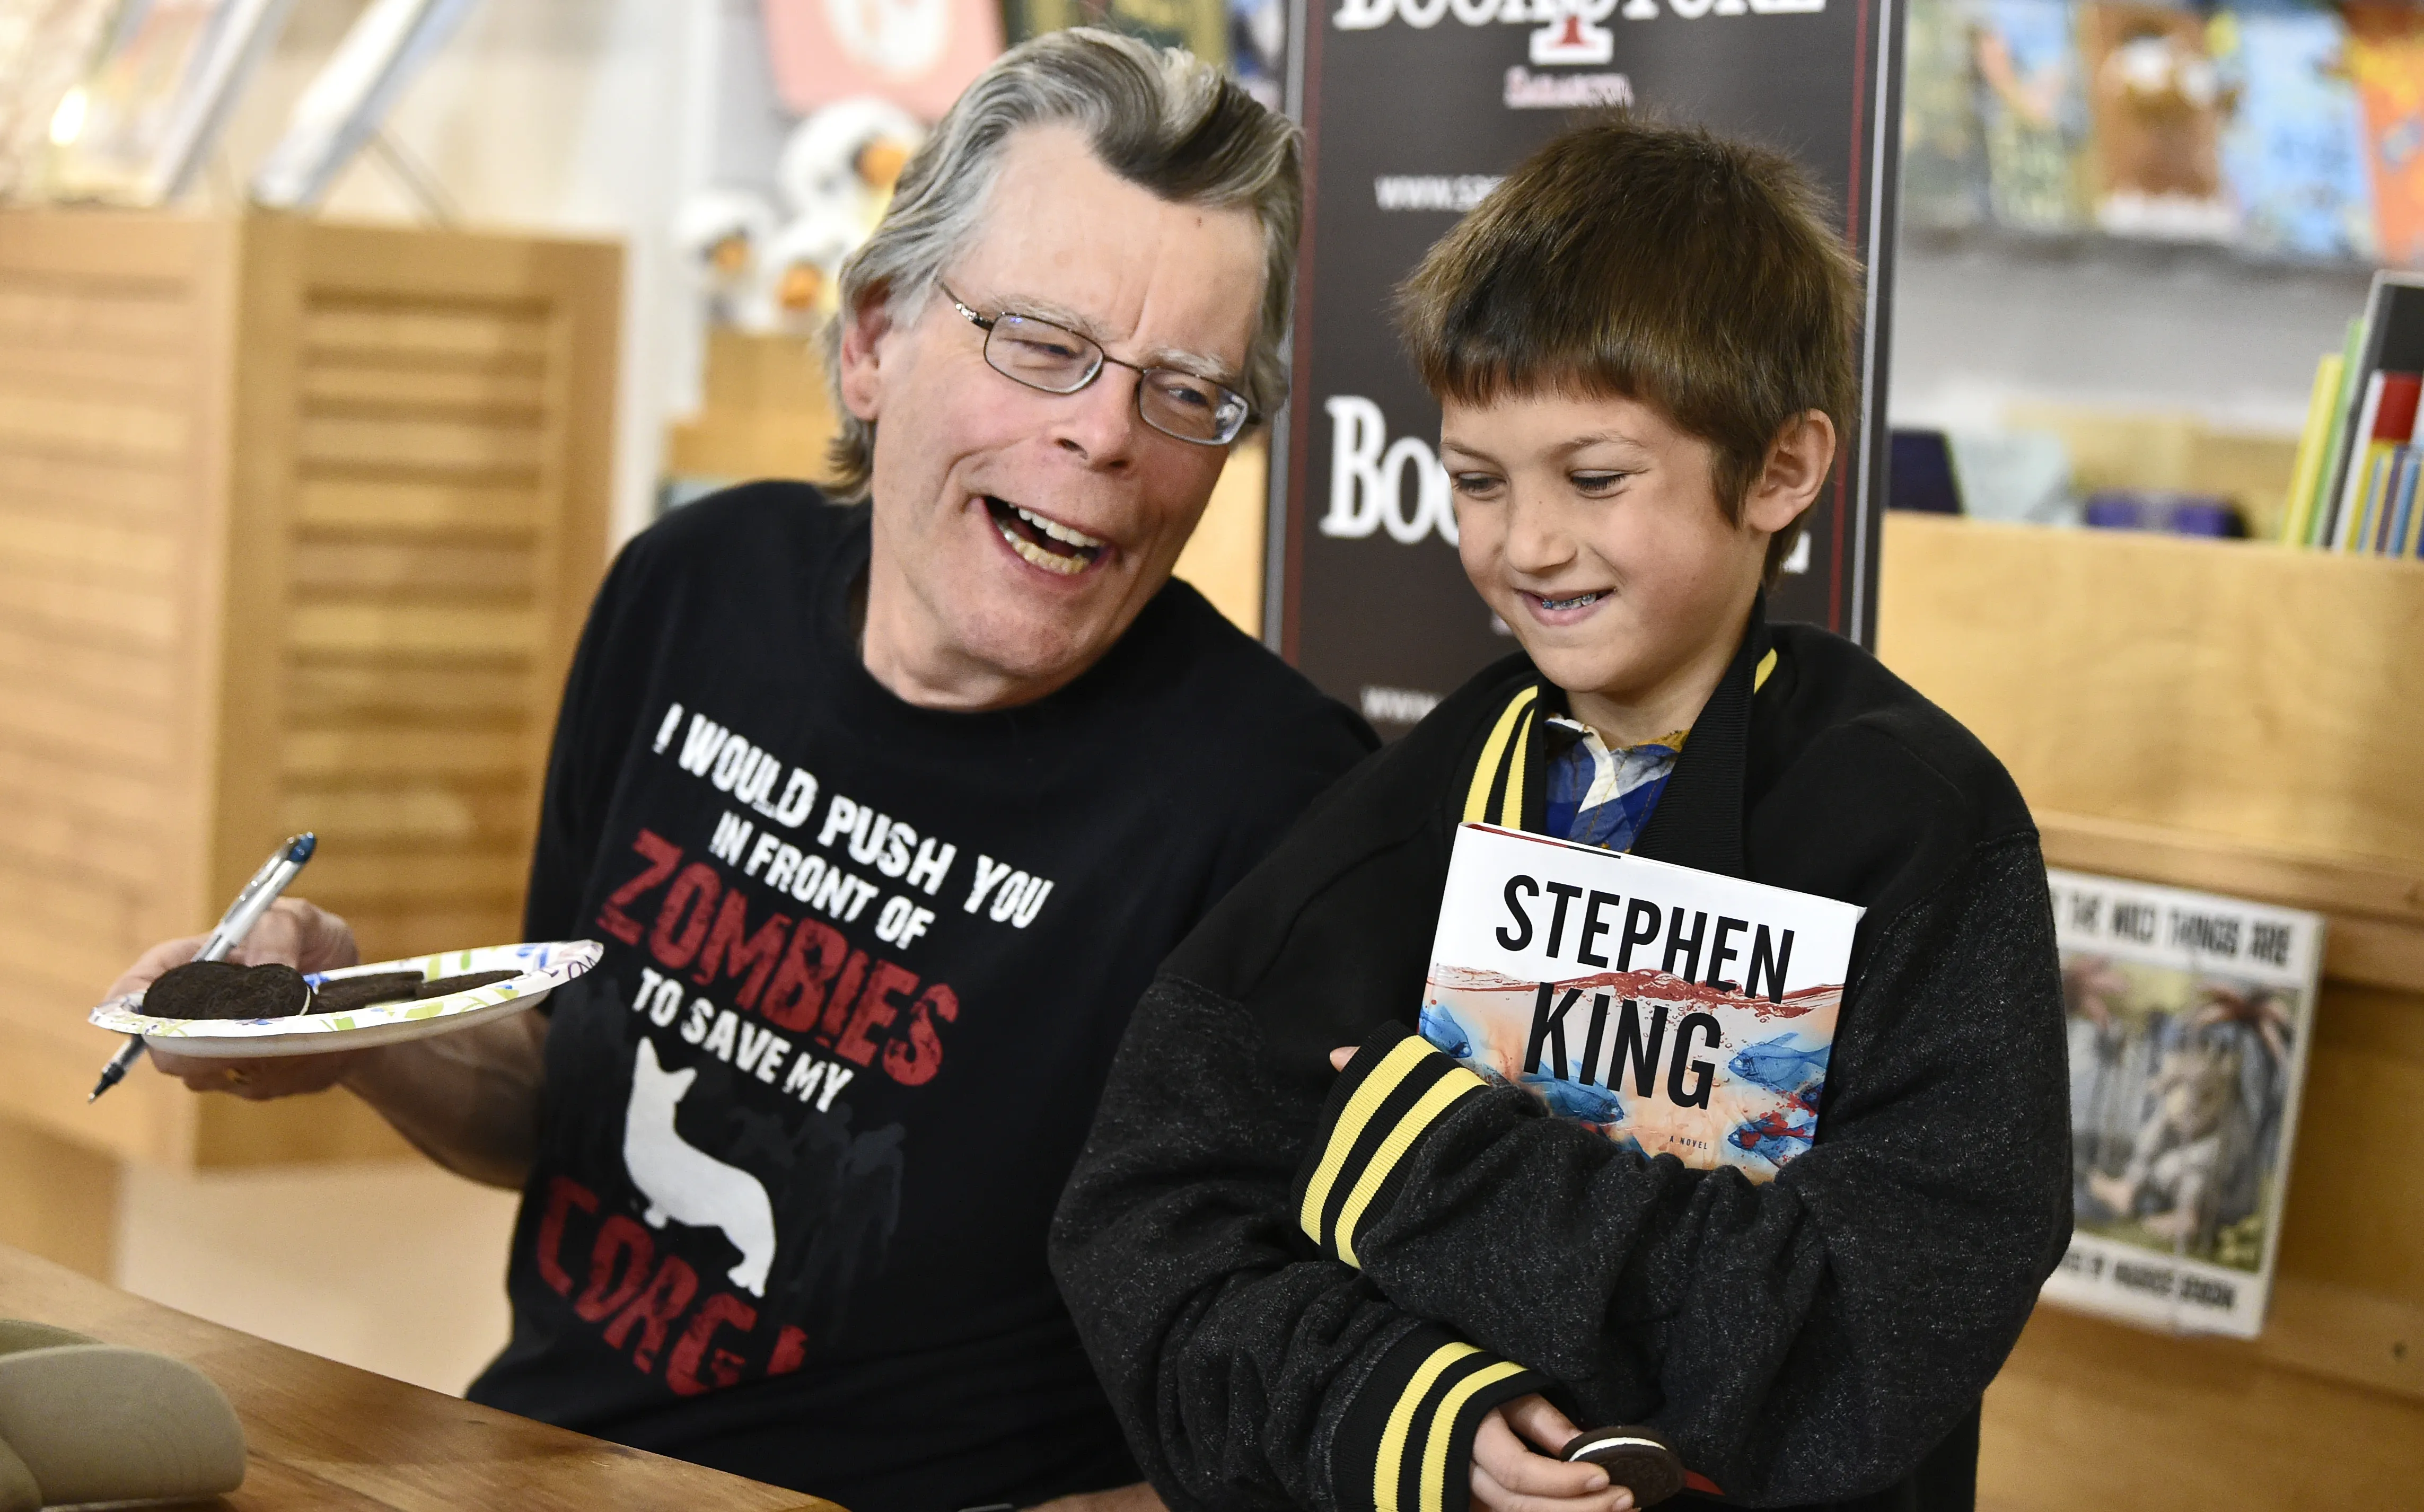 Stephen King comparte unas Oreo con Dallis Bernabi, de 10 años, durante una sesión de firmas en una librería de Sarasota, Florida.